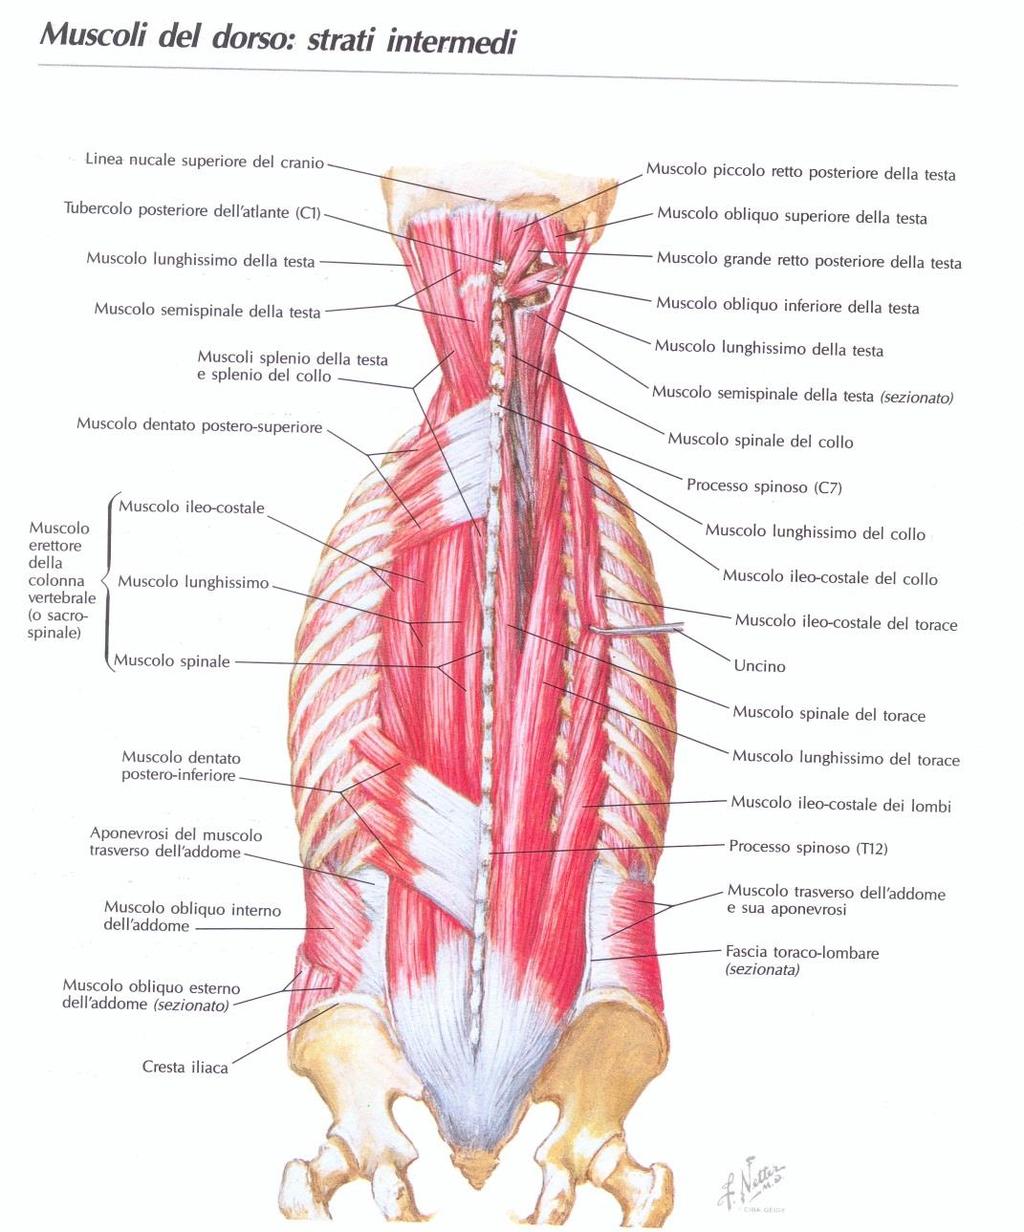 Muscoli Spino-Costali Dentati Posteriori